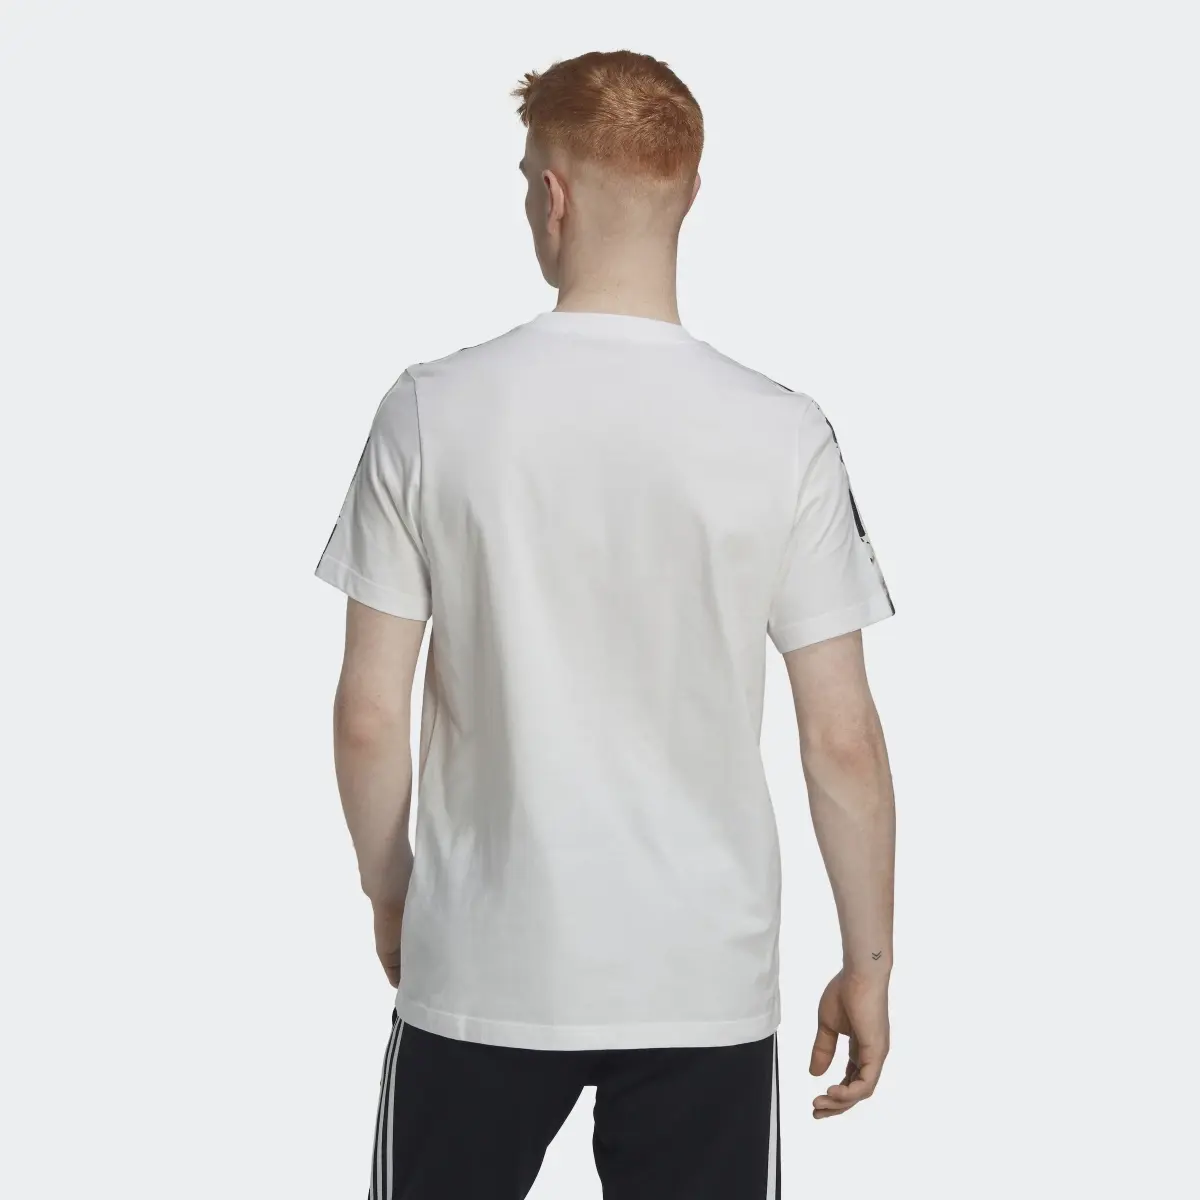 Adidas 3-Stripes Camo T-Shirt. 3